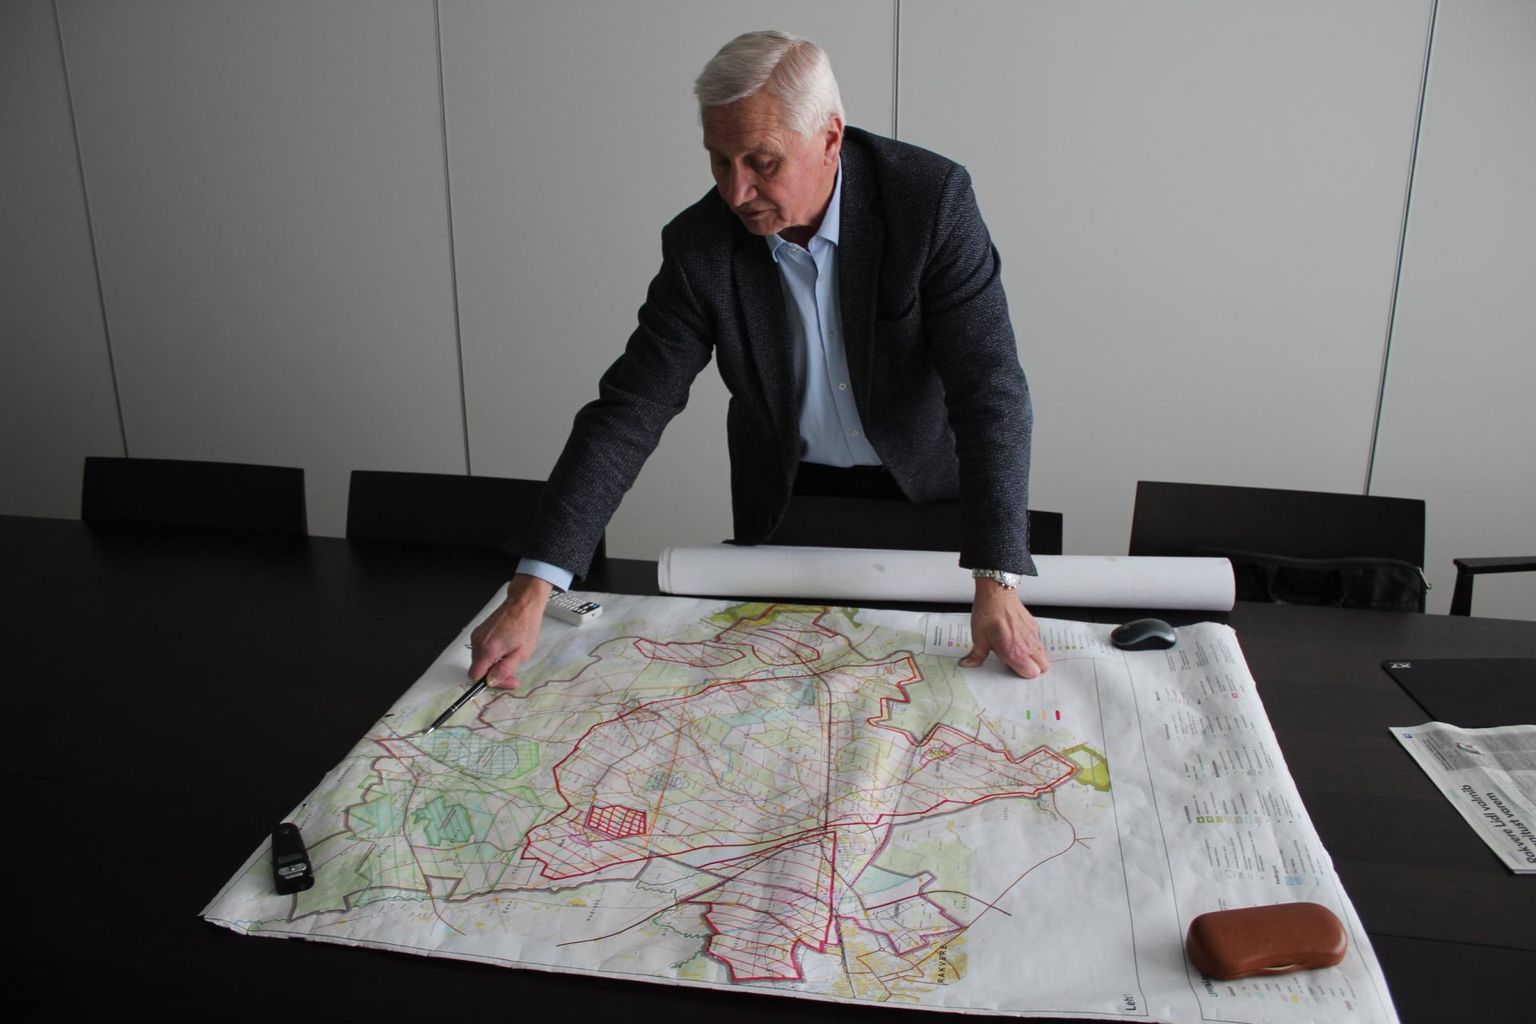 Peep Vassiljev osutab kaardil Aru-Lõuna lubjakivikarjäärile, kust Eesti geoloogiateenistus juba on võtnud fosforiidiproove.